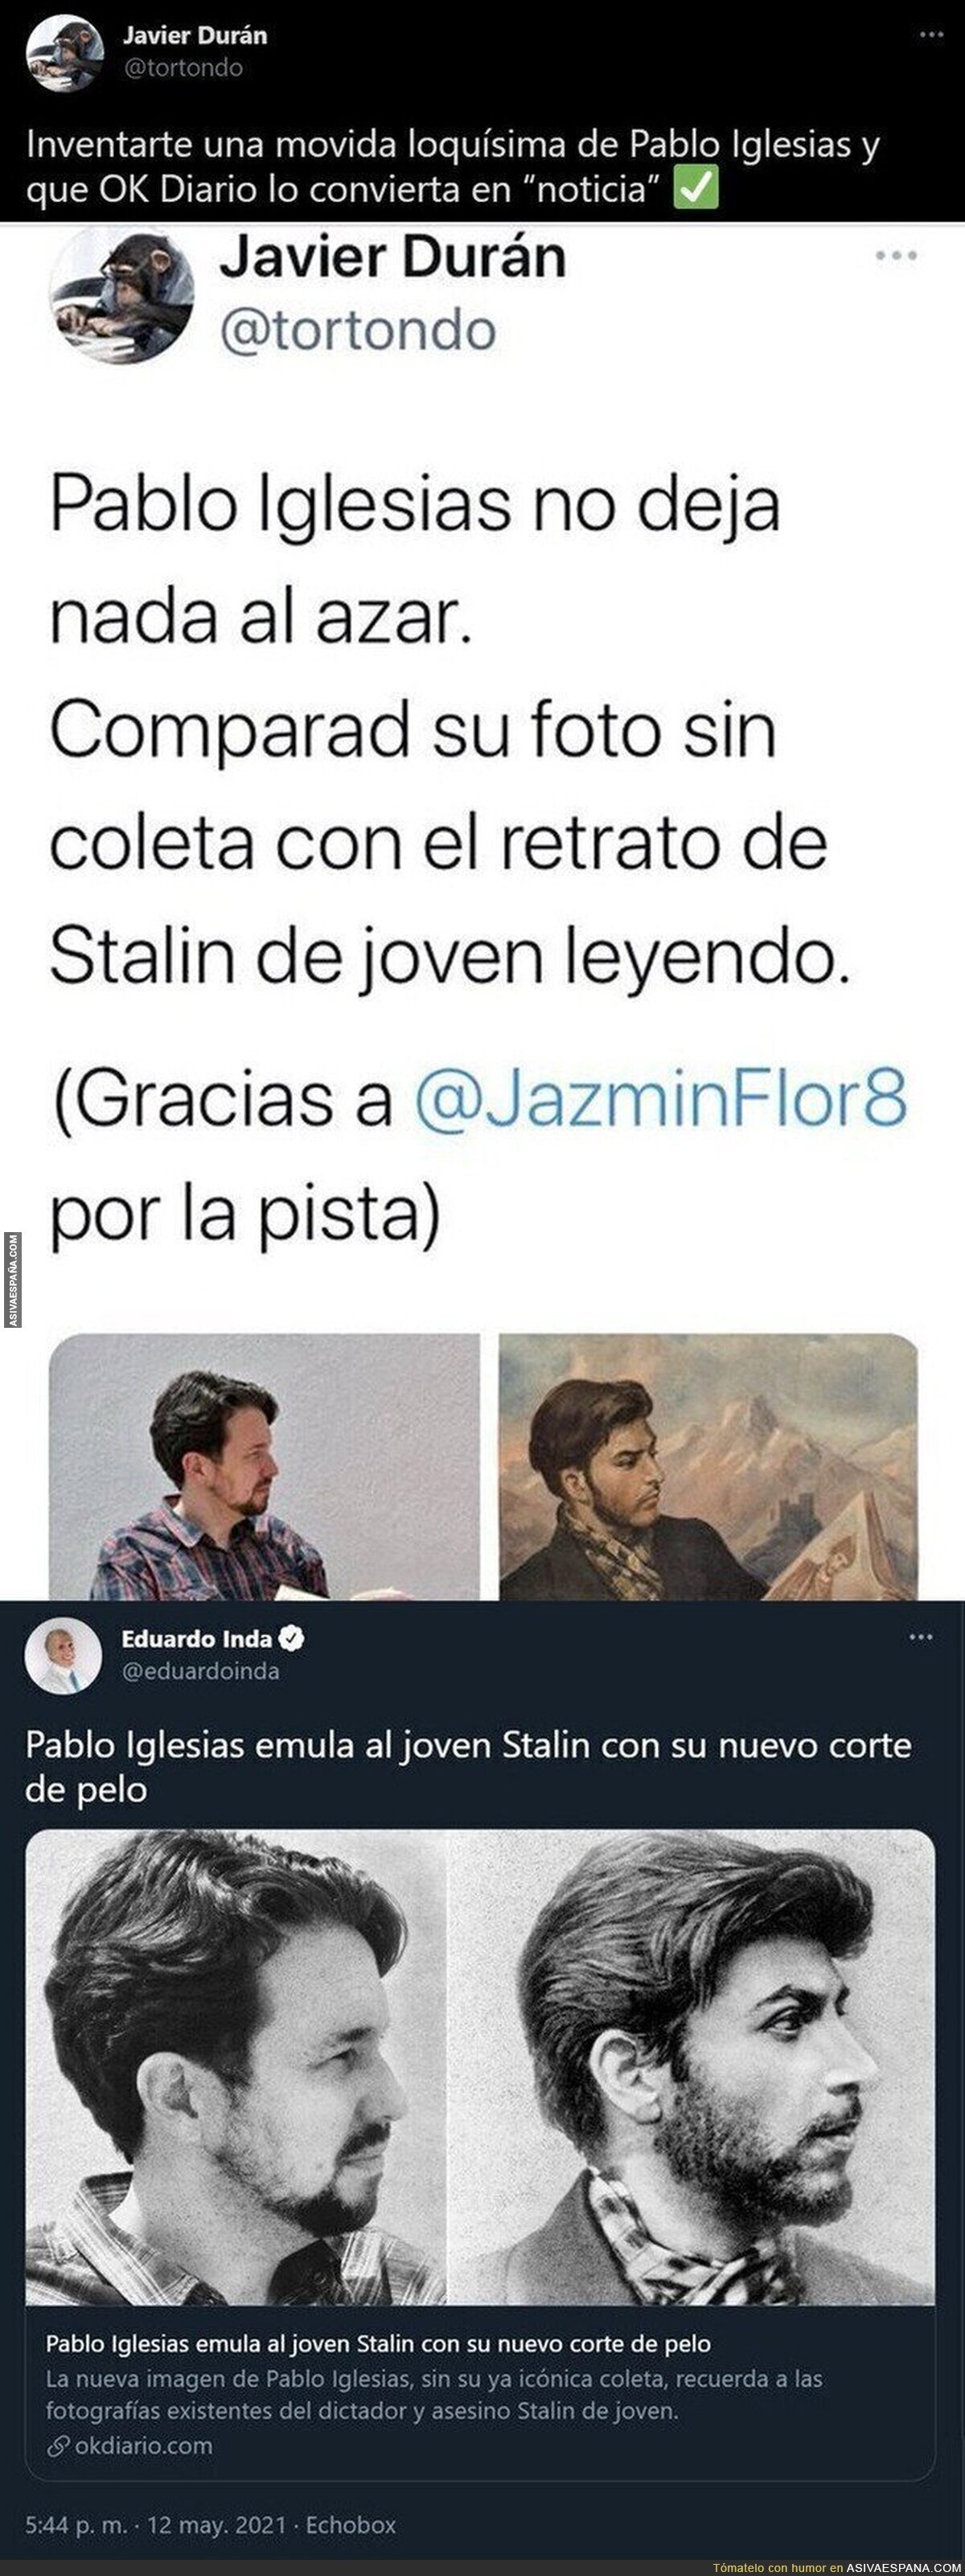 OKDiario saca esta surrealista noticia sobre Pablo Iglesias y Stalin por su corte de pelo tras la broma de un tuitero